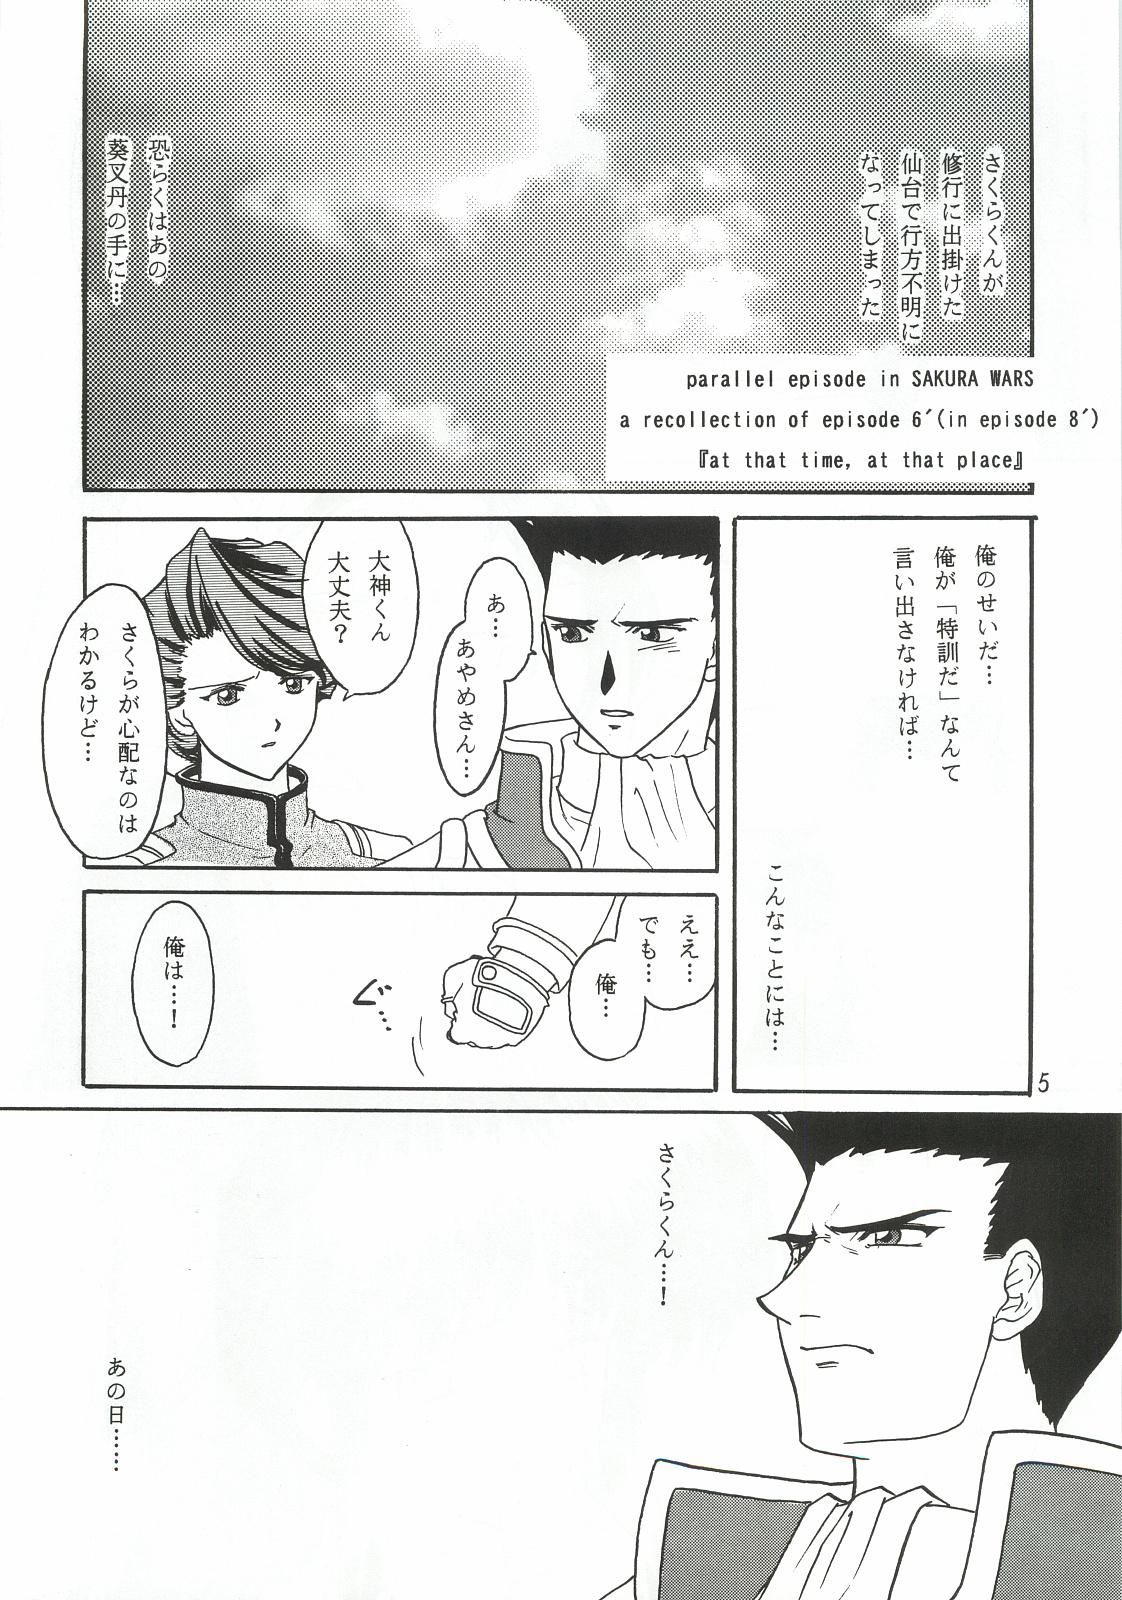 Pija pd00100 - Sakura taisen Mamada - Page 4